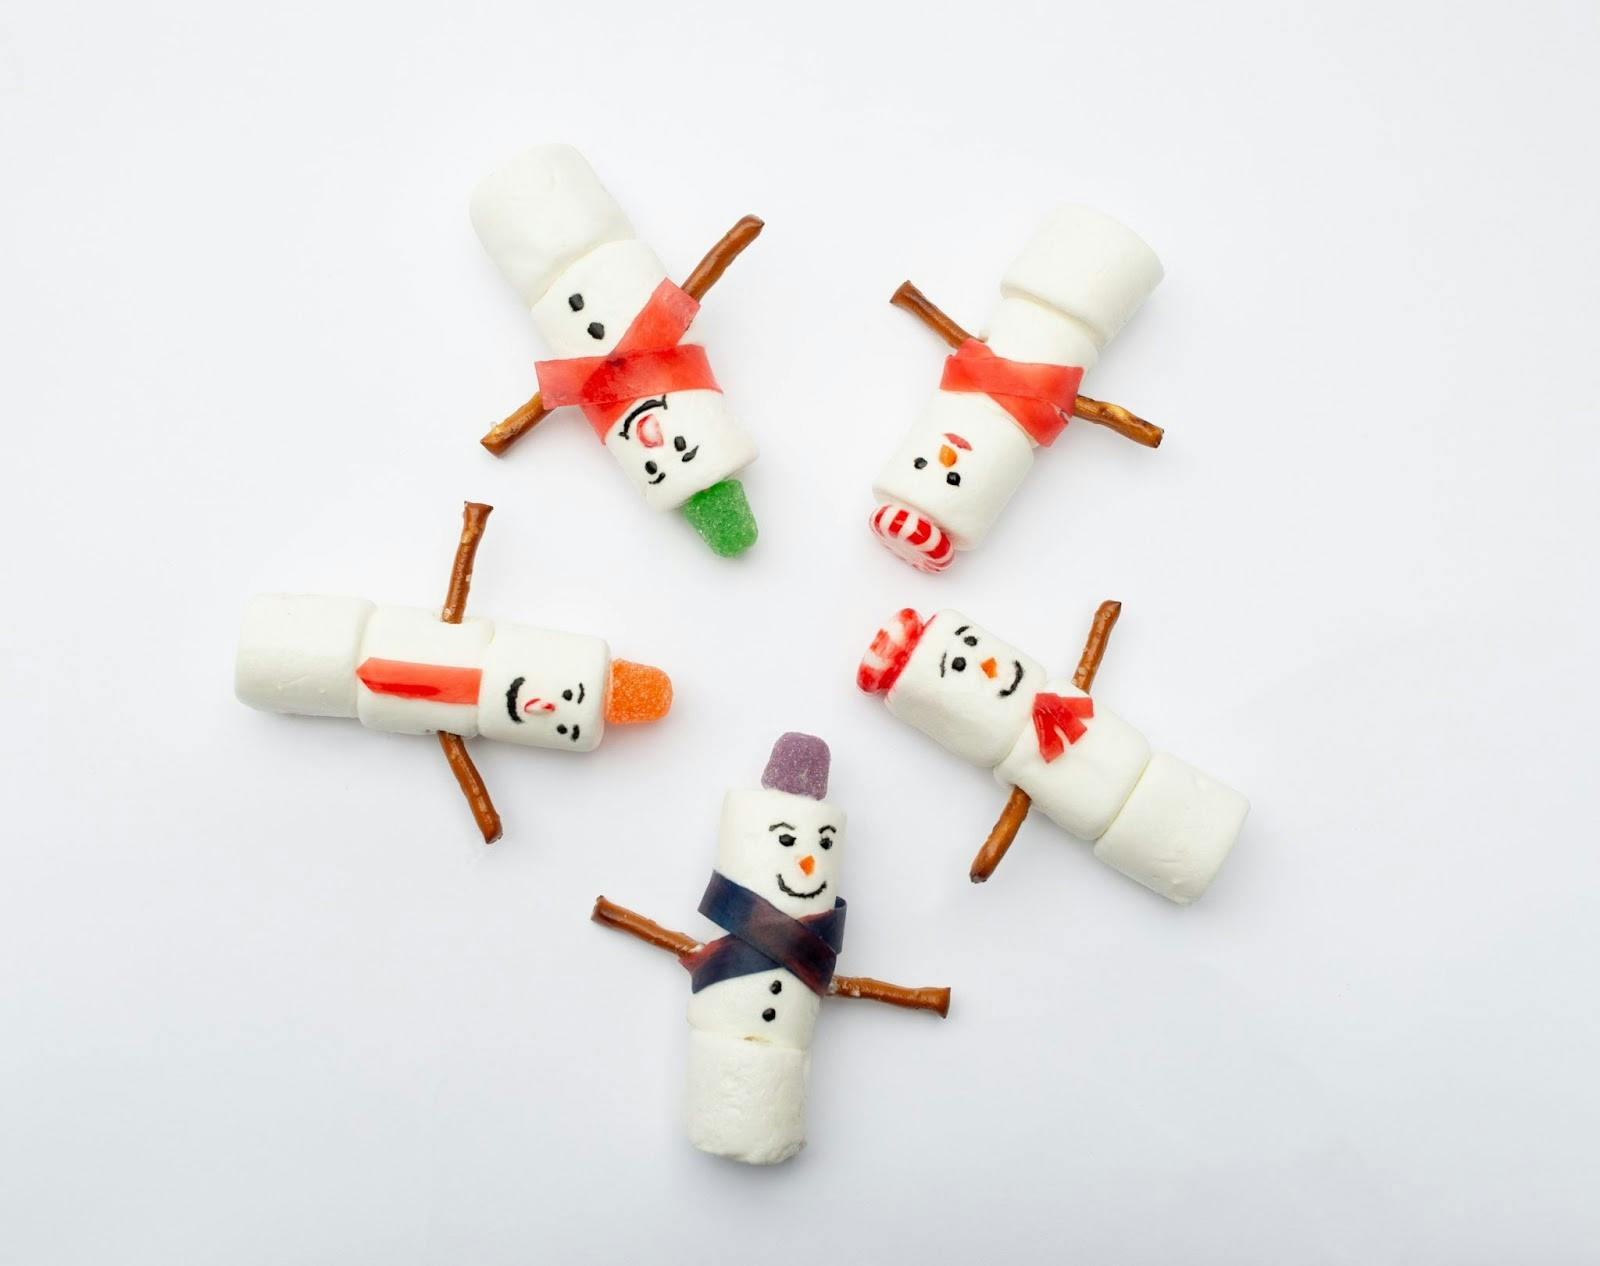 snowmen marshmallows